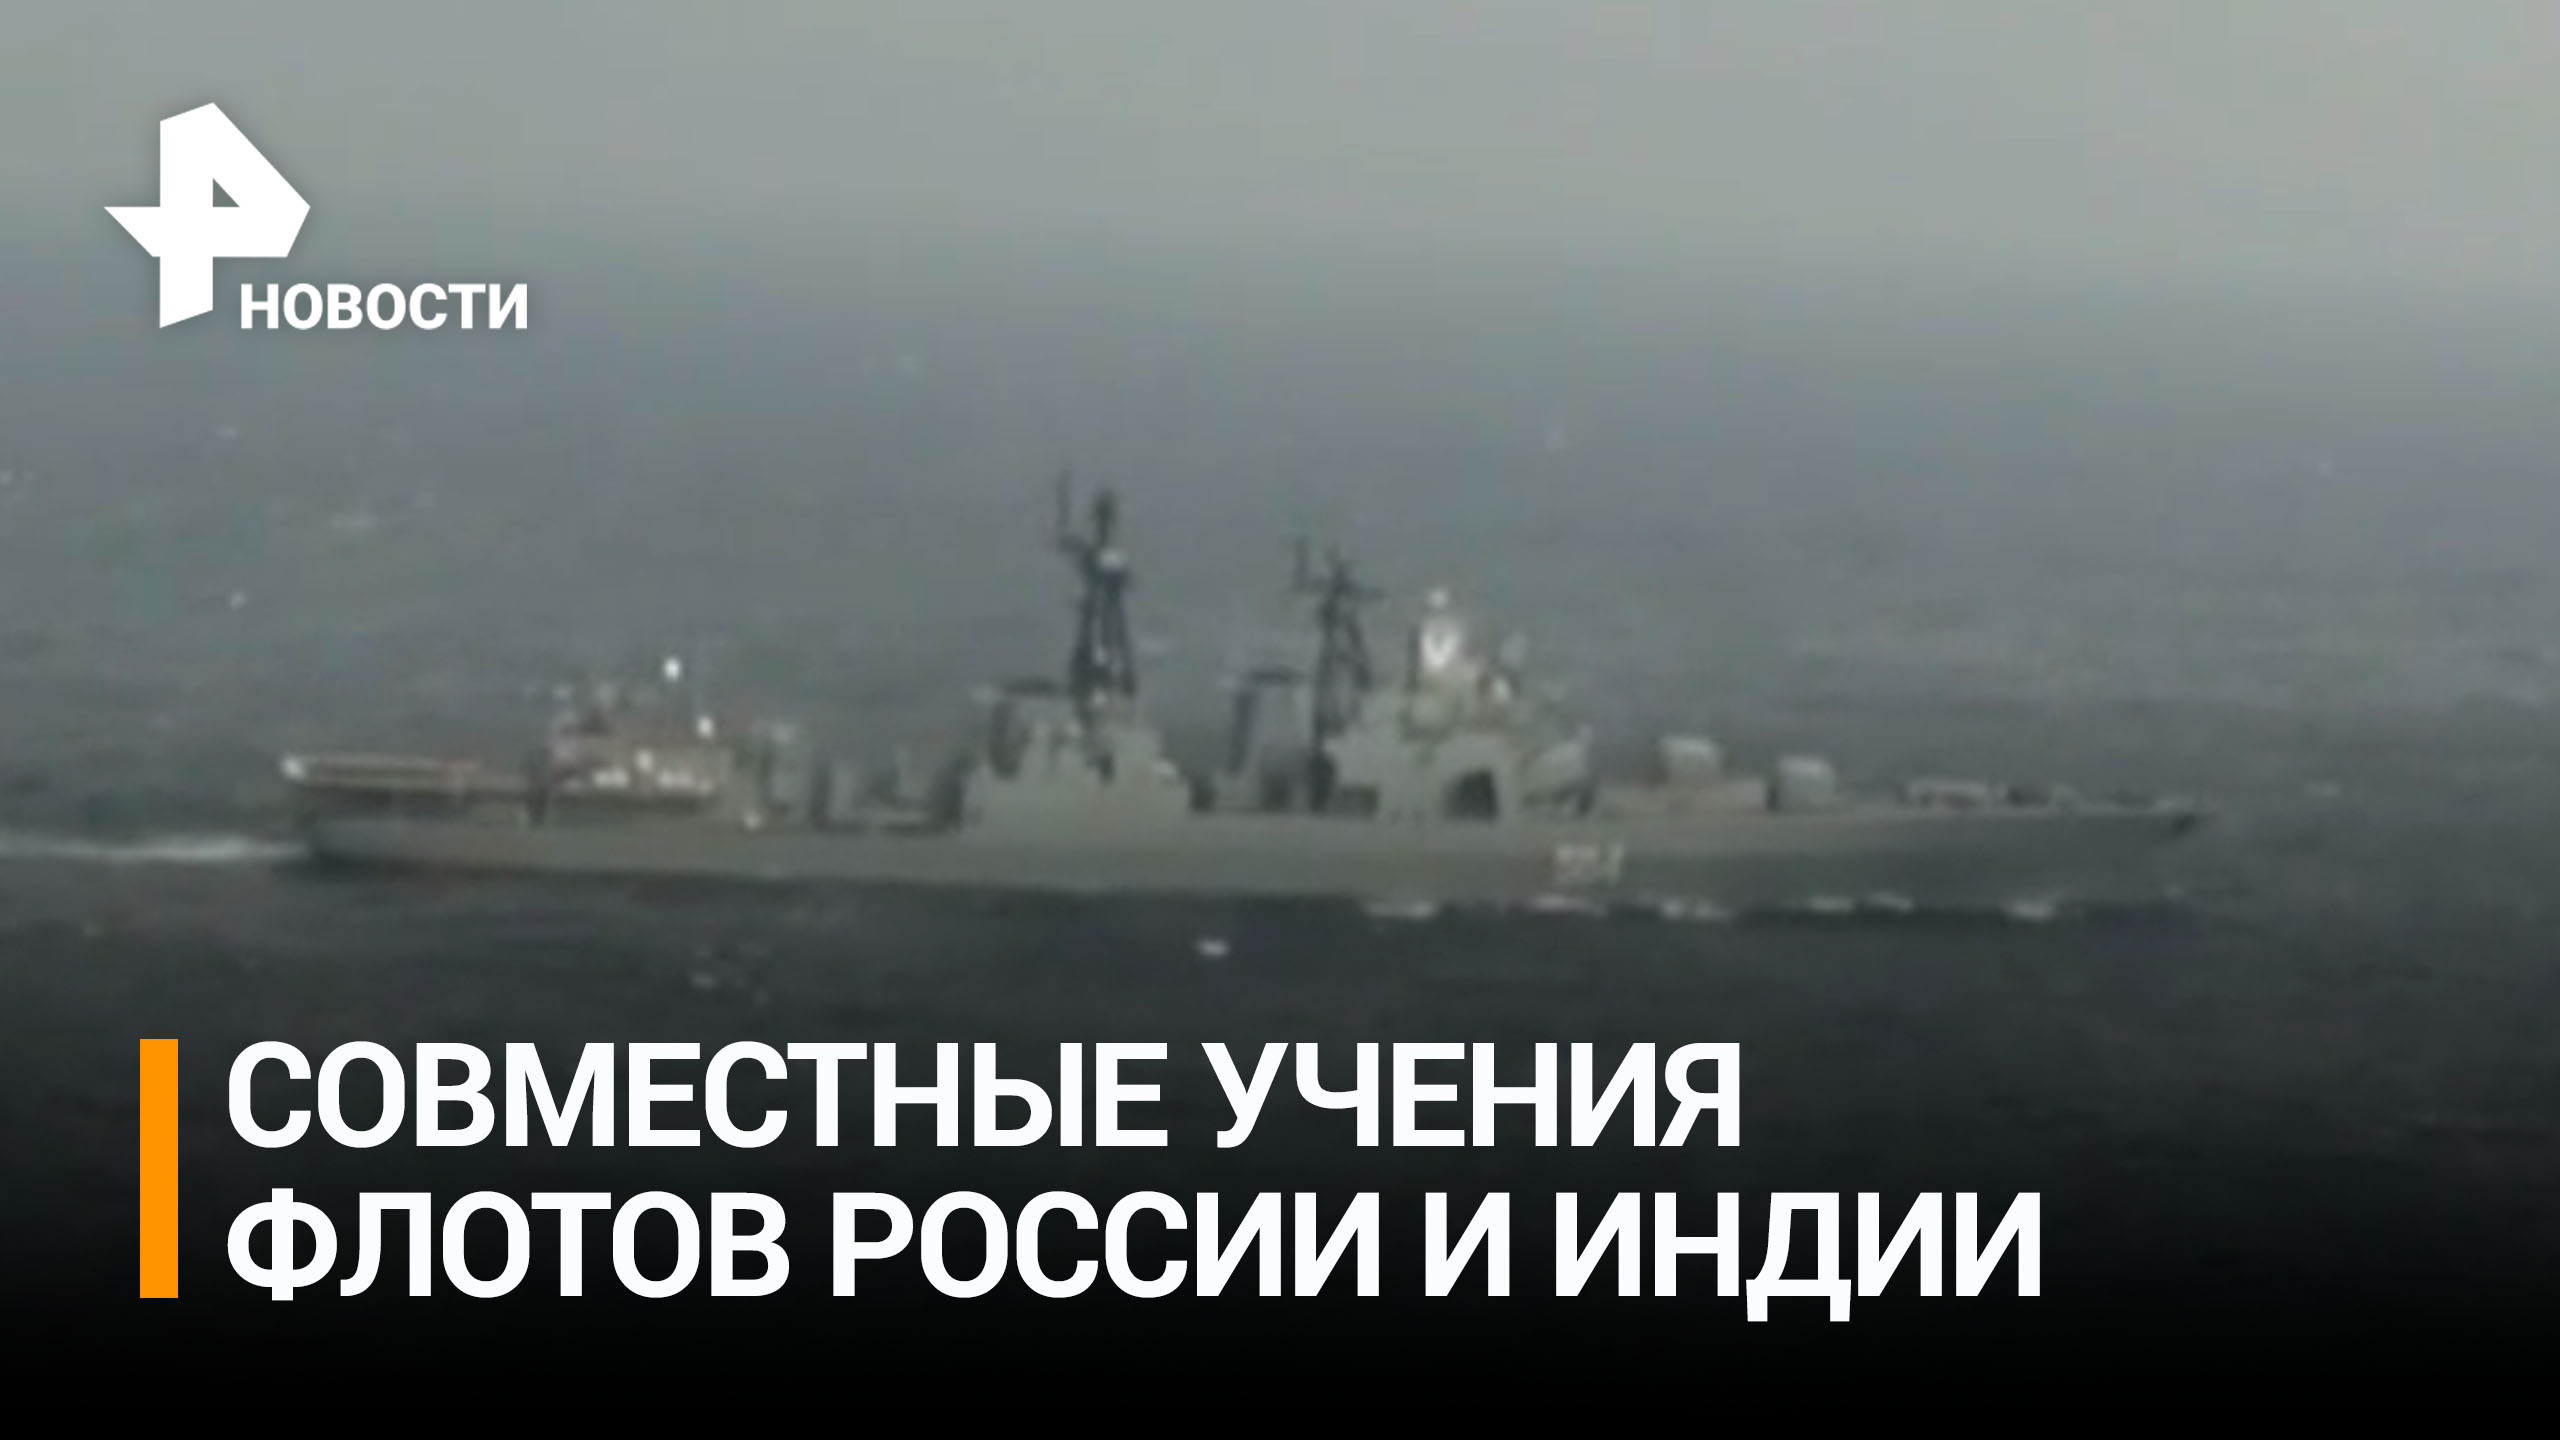 Боевые корабли ВМФ России и ВМС Индии выполнили артиллерийские стрельбы по морским и воздушным целям